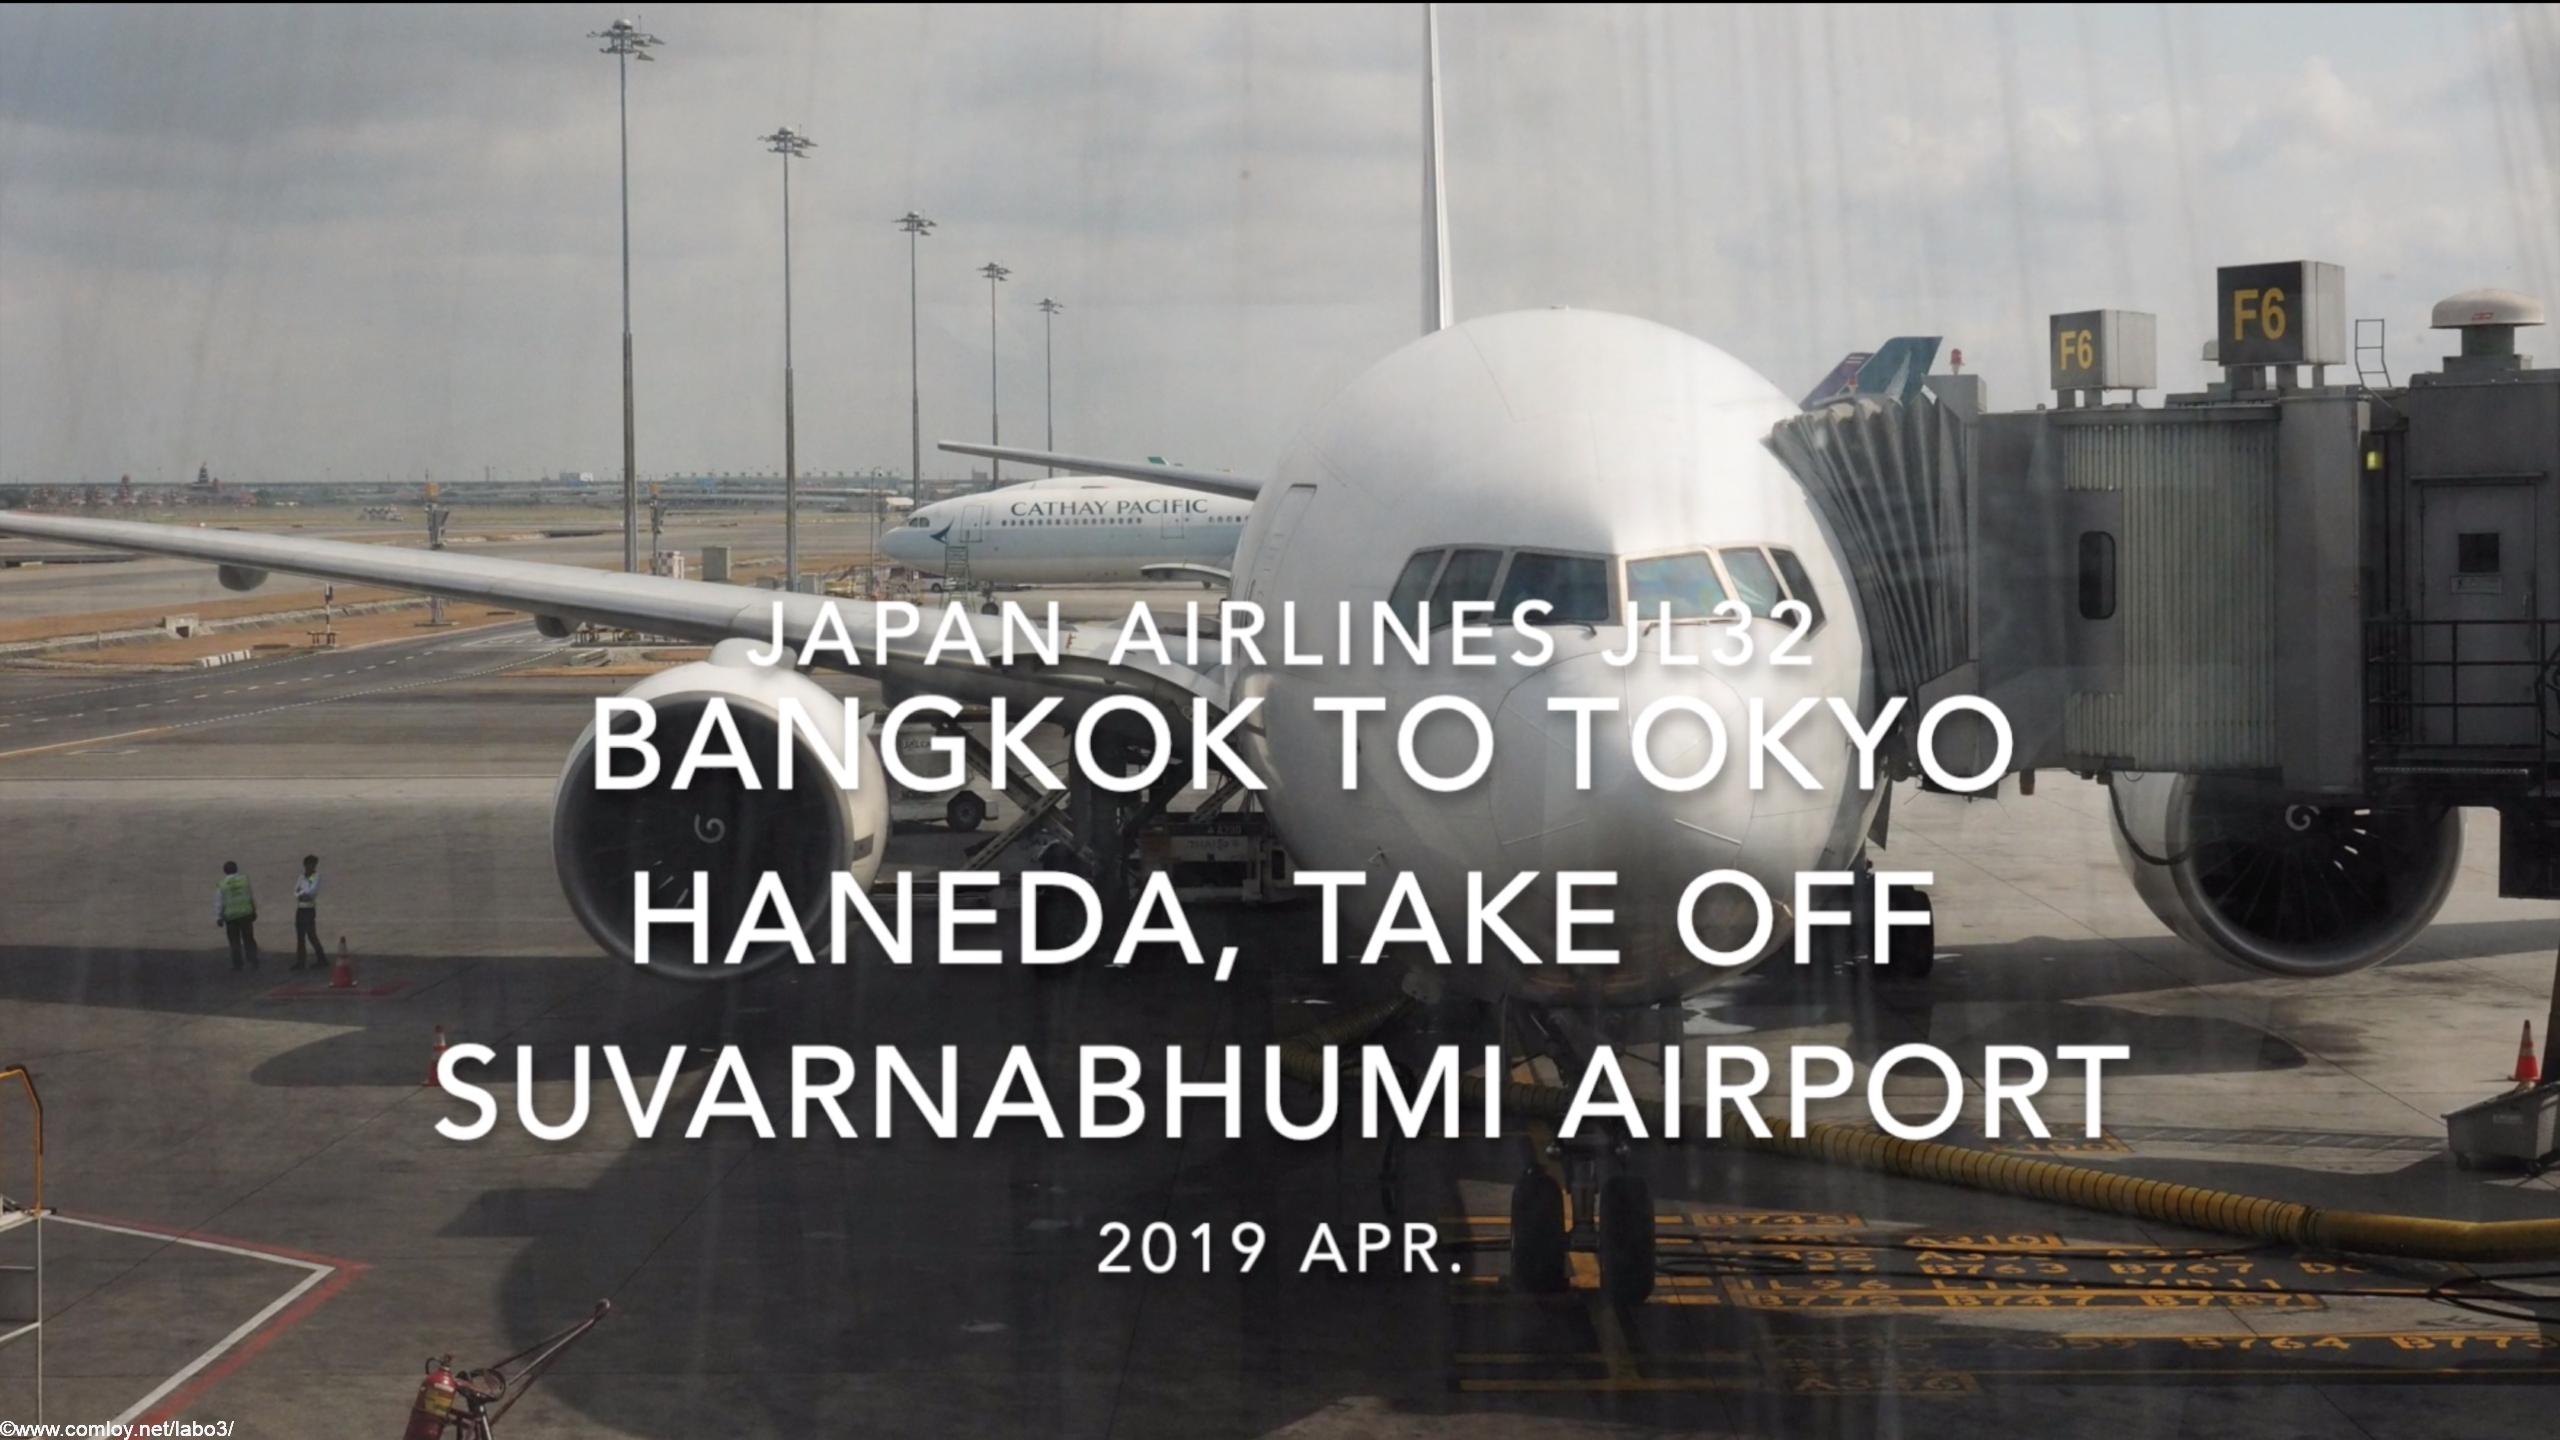 【機内から離着陸映像】2019 Apr Japan Airlines JL32 BANGKOK to TOKYO HANEDA, Take off Suvarnabhumi Airport